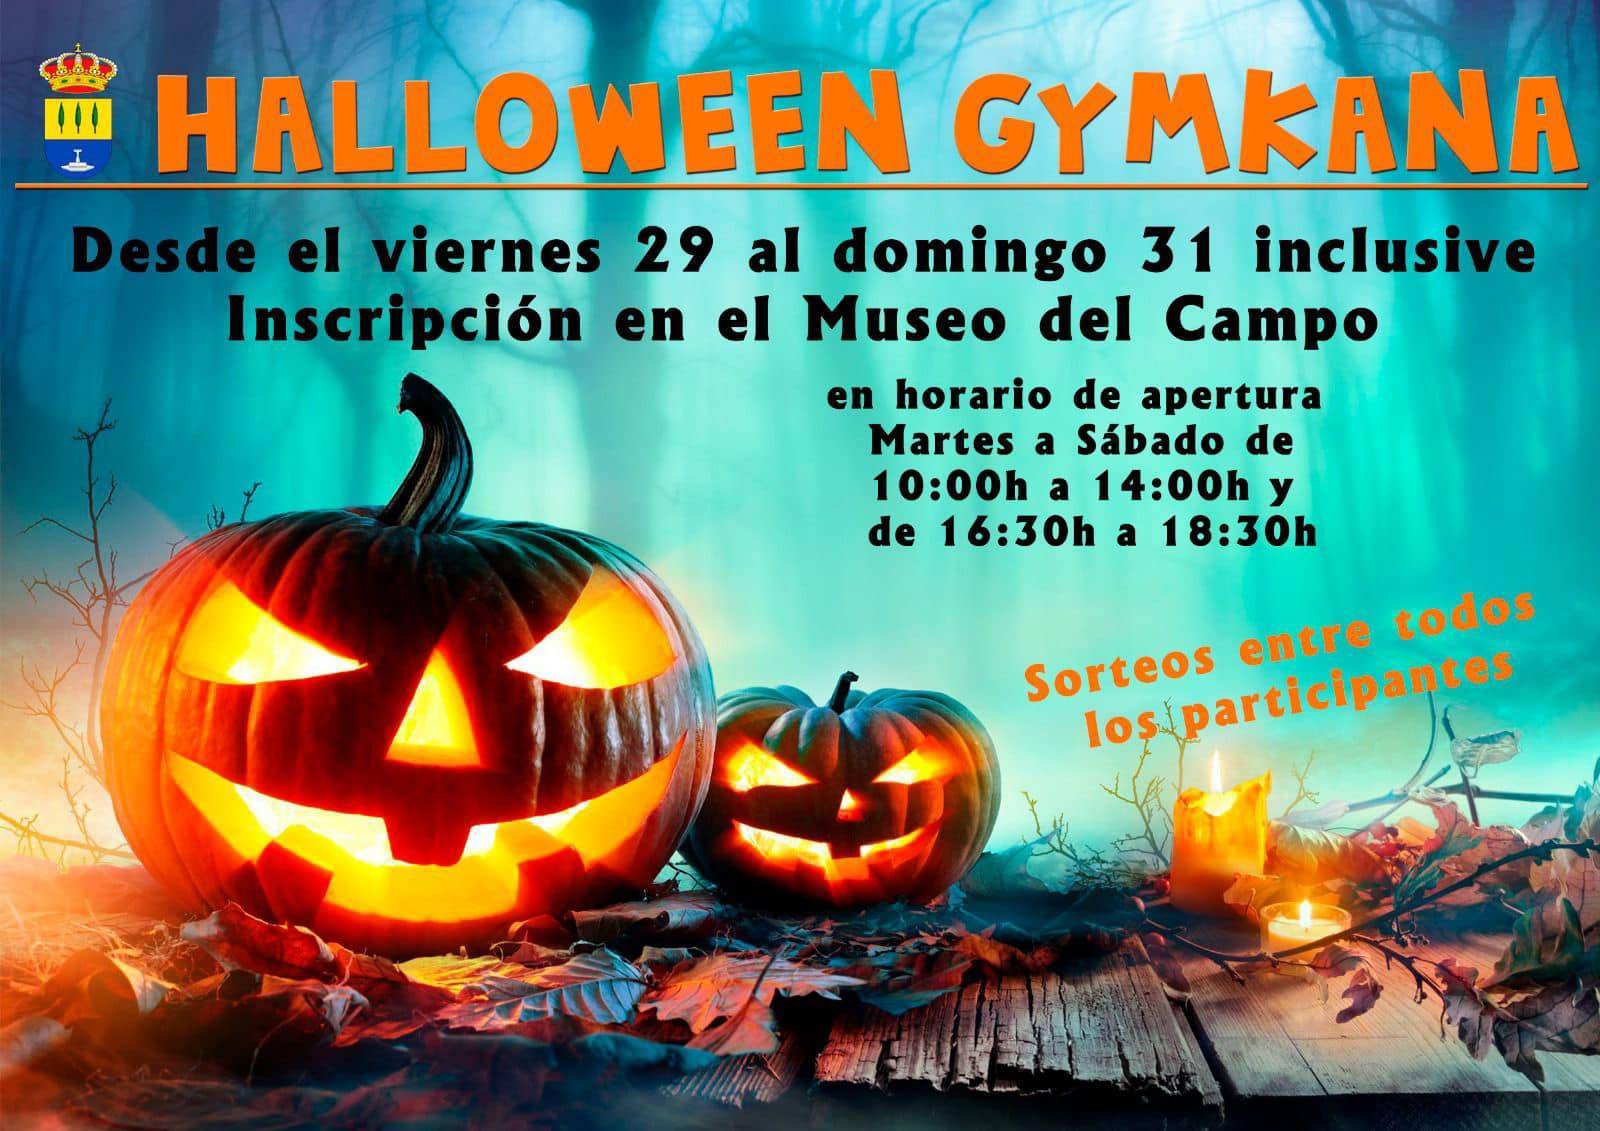 Halloween gymkana (2021) - Alameda (Málaga)